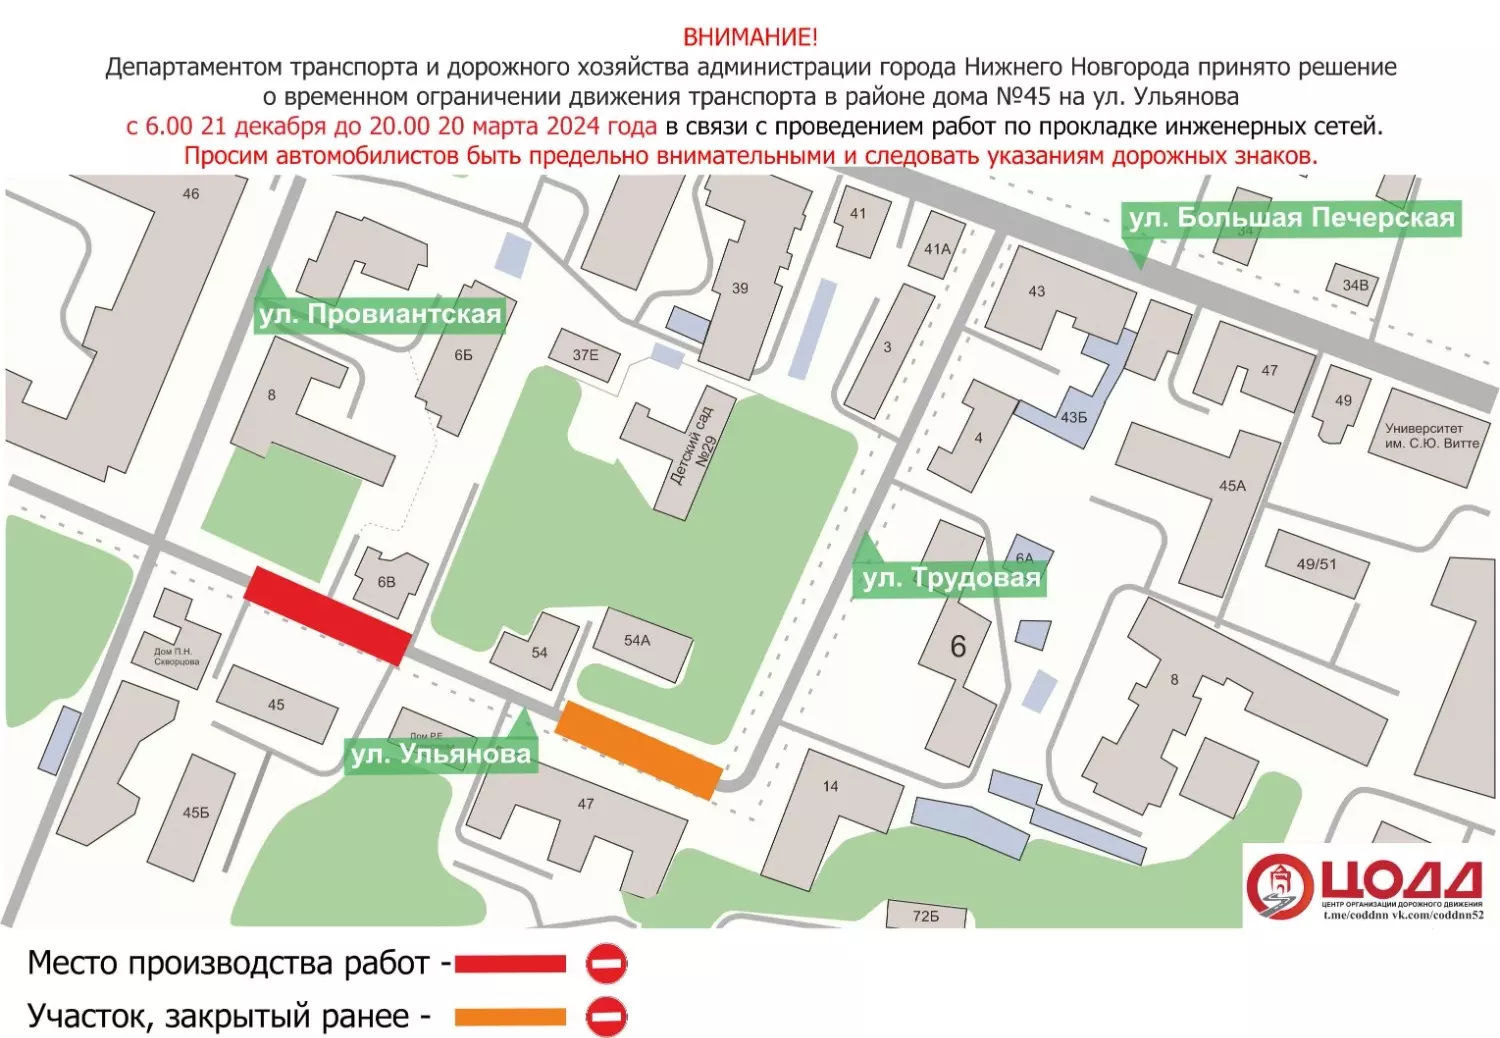 Схема перекрытого участка на улице Ульянова